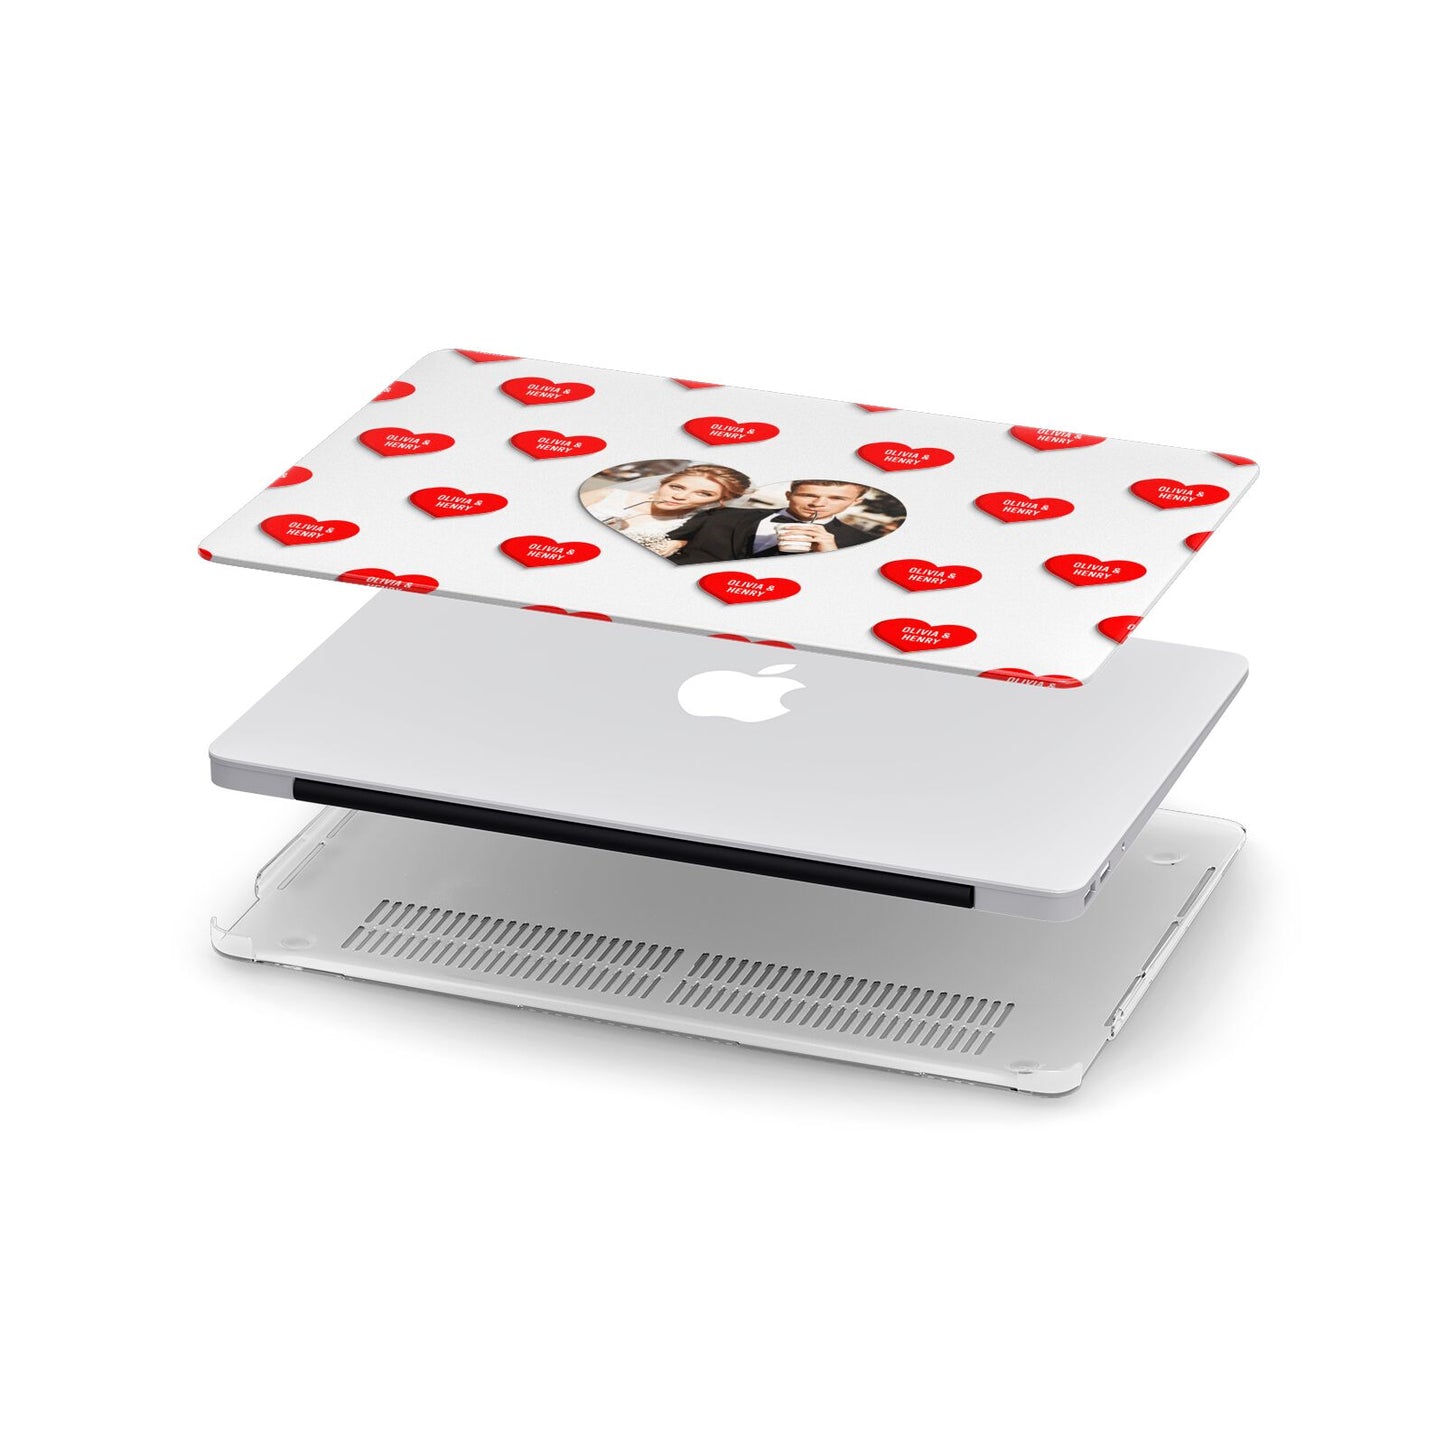 Valentines Day Photo Upload Apple MacBook Case in Detail